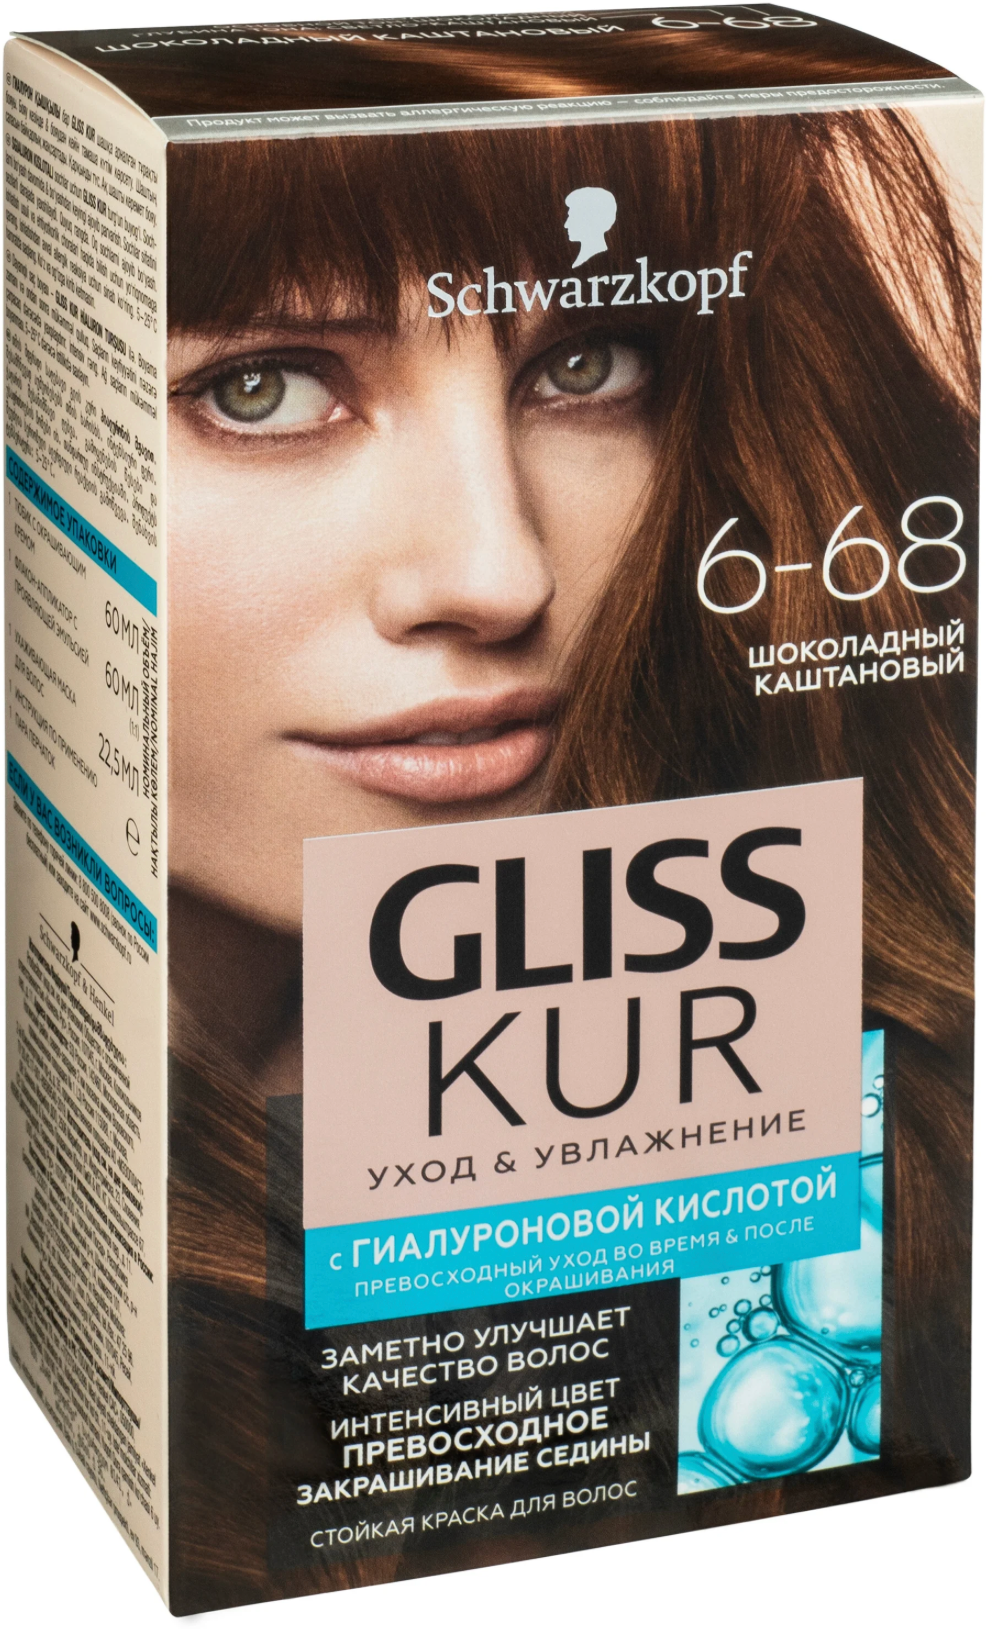 Глисс Кур / Gliss Kur - Краска для волос Уход&Увлажнение 6-68 Шоколадный каштановый 142,5 мл